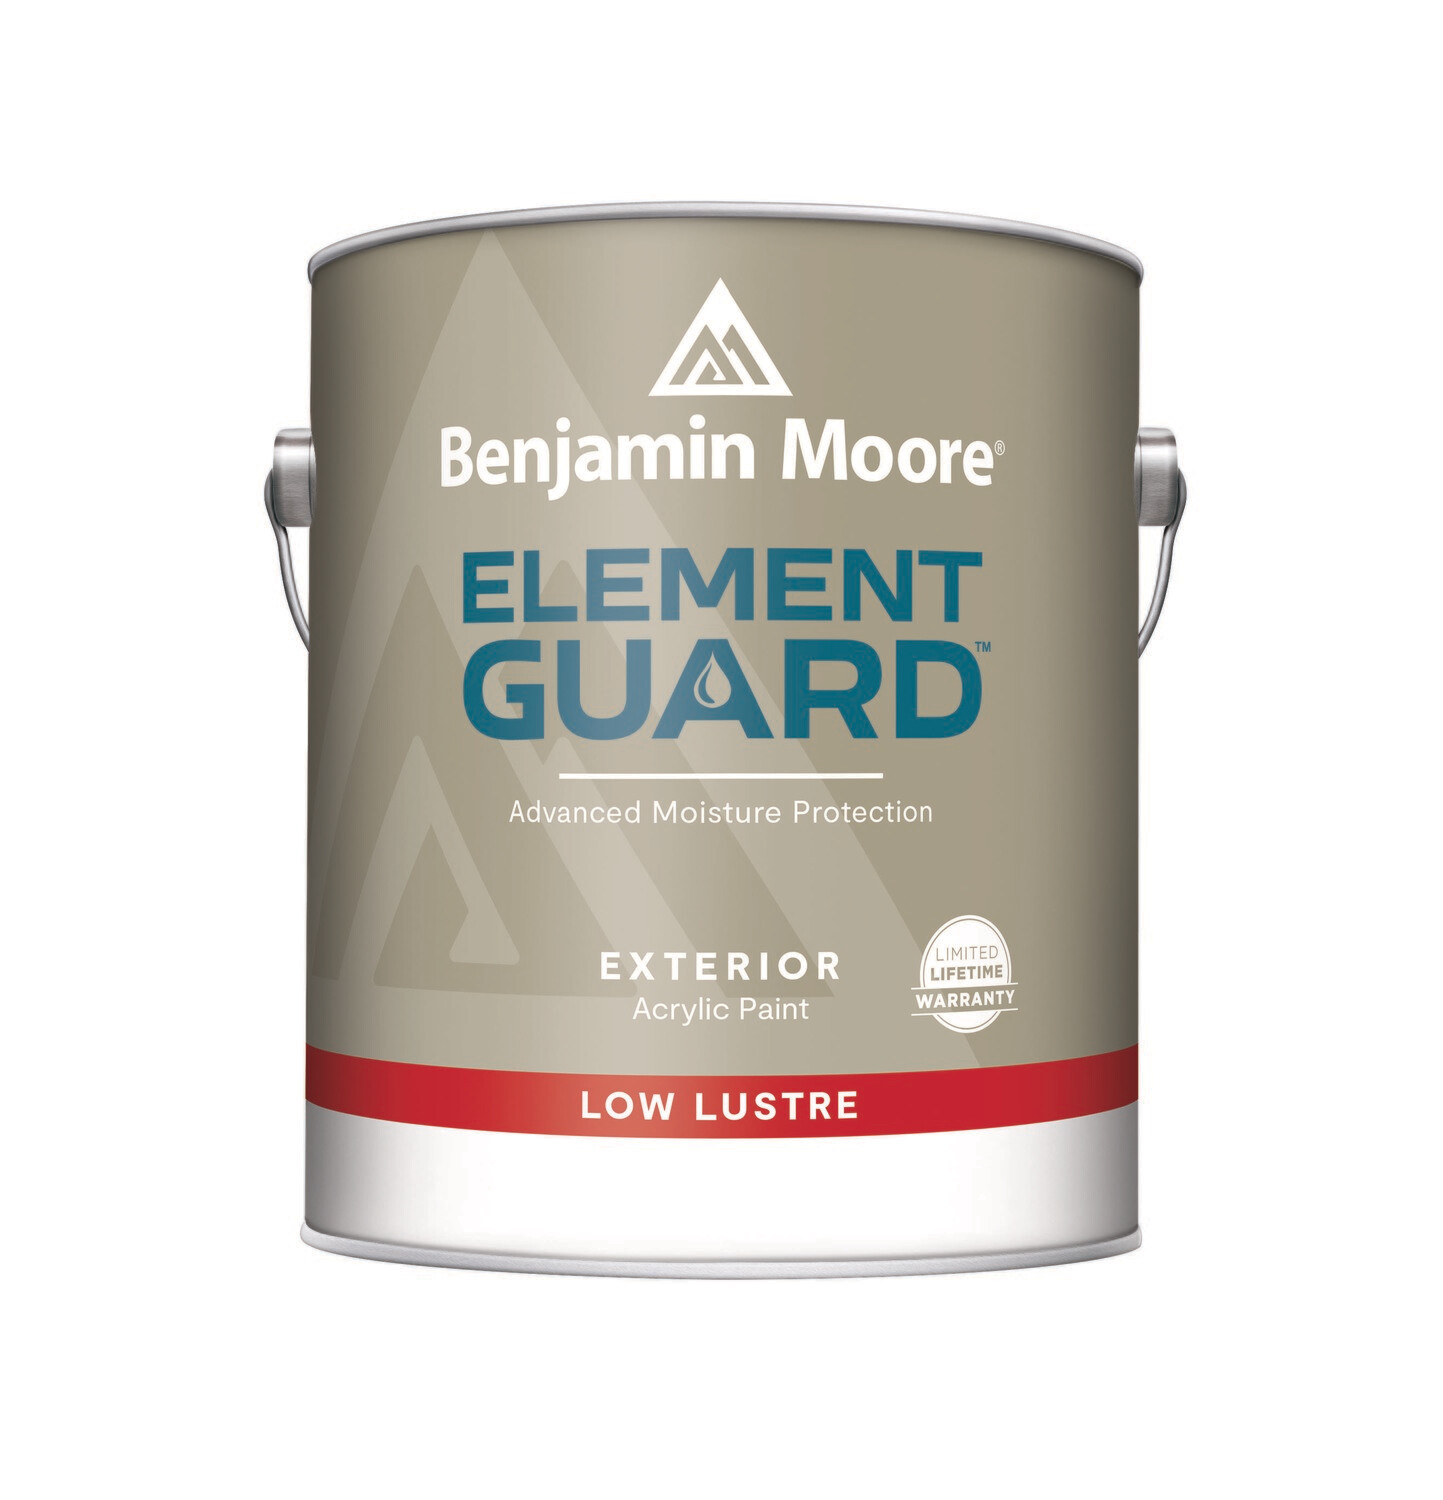 Element Guard Exterior